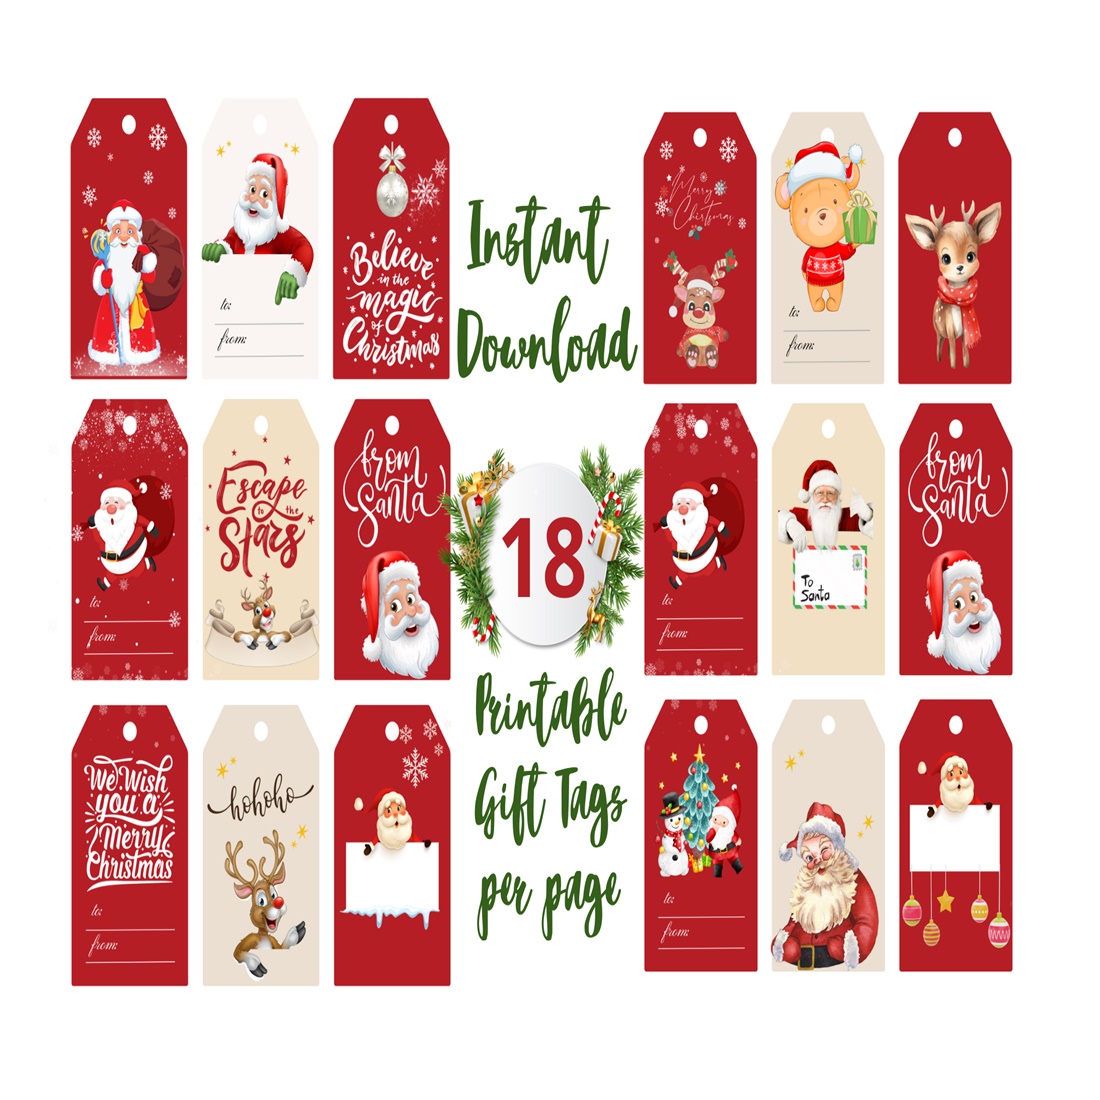 Printable Christmas Gift Tags, Holiday gift tags, DIY gift tags, Holiday gift wrapping, Assorted Christmas gift tags, Set of 18 Printable cover image.